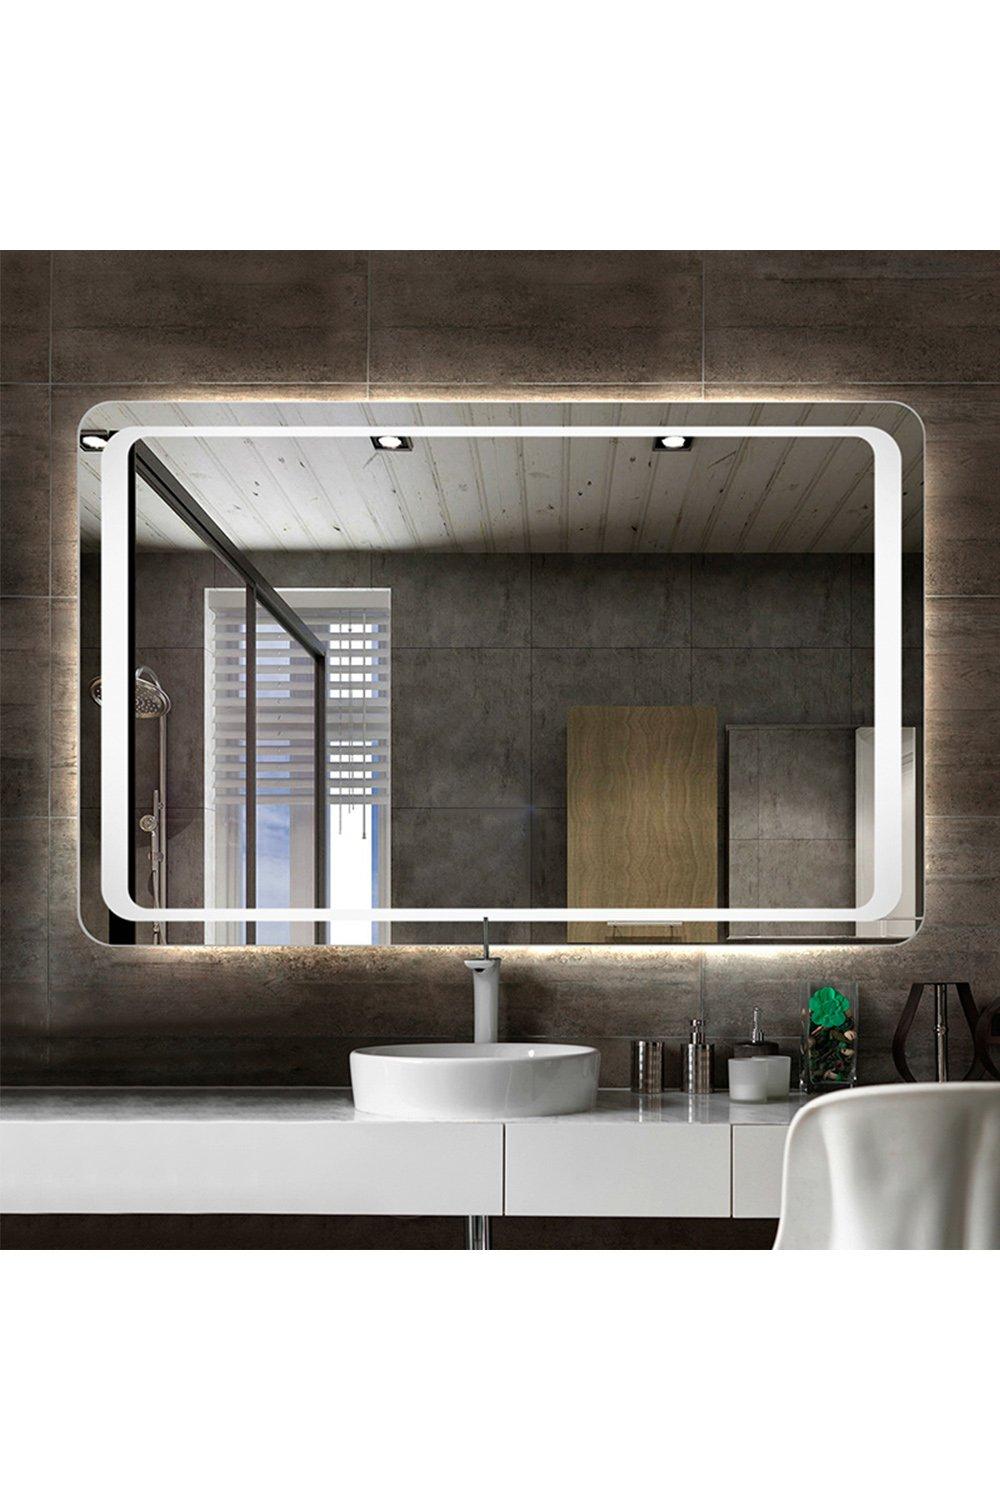 80cm W x 60cm H LED Wall Mounted Anti-Fog Illuminated Bathroom Mirror with Sensor Switch